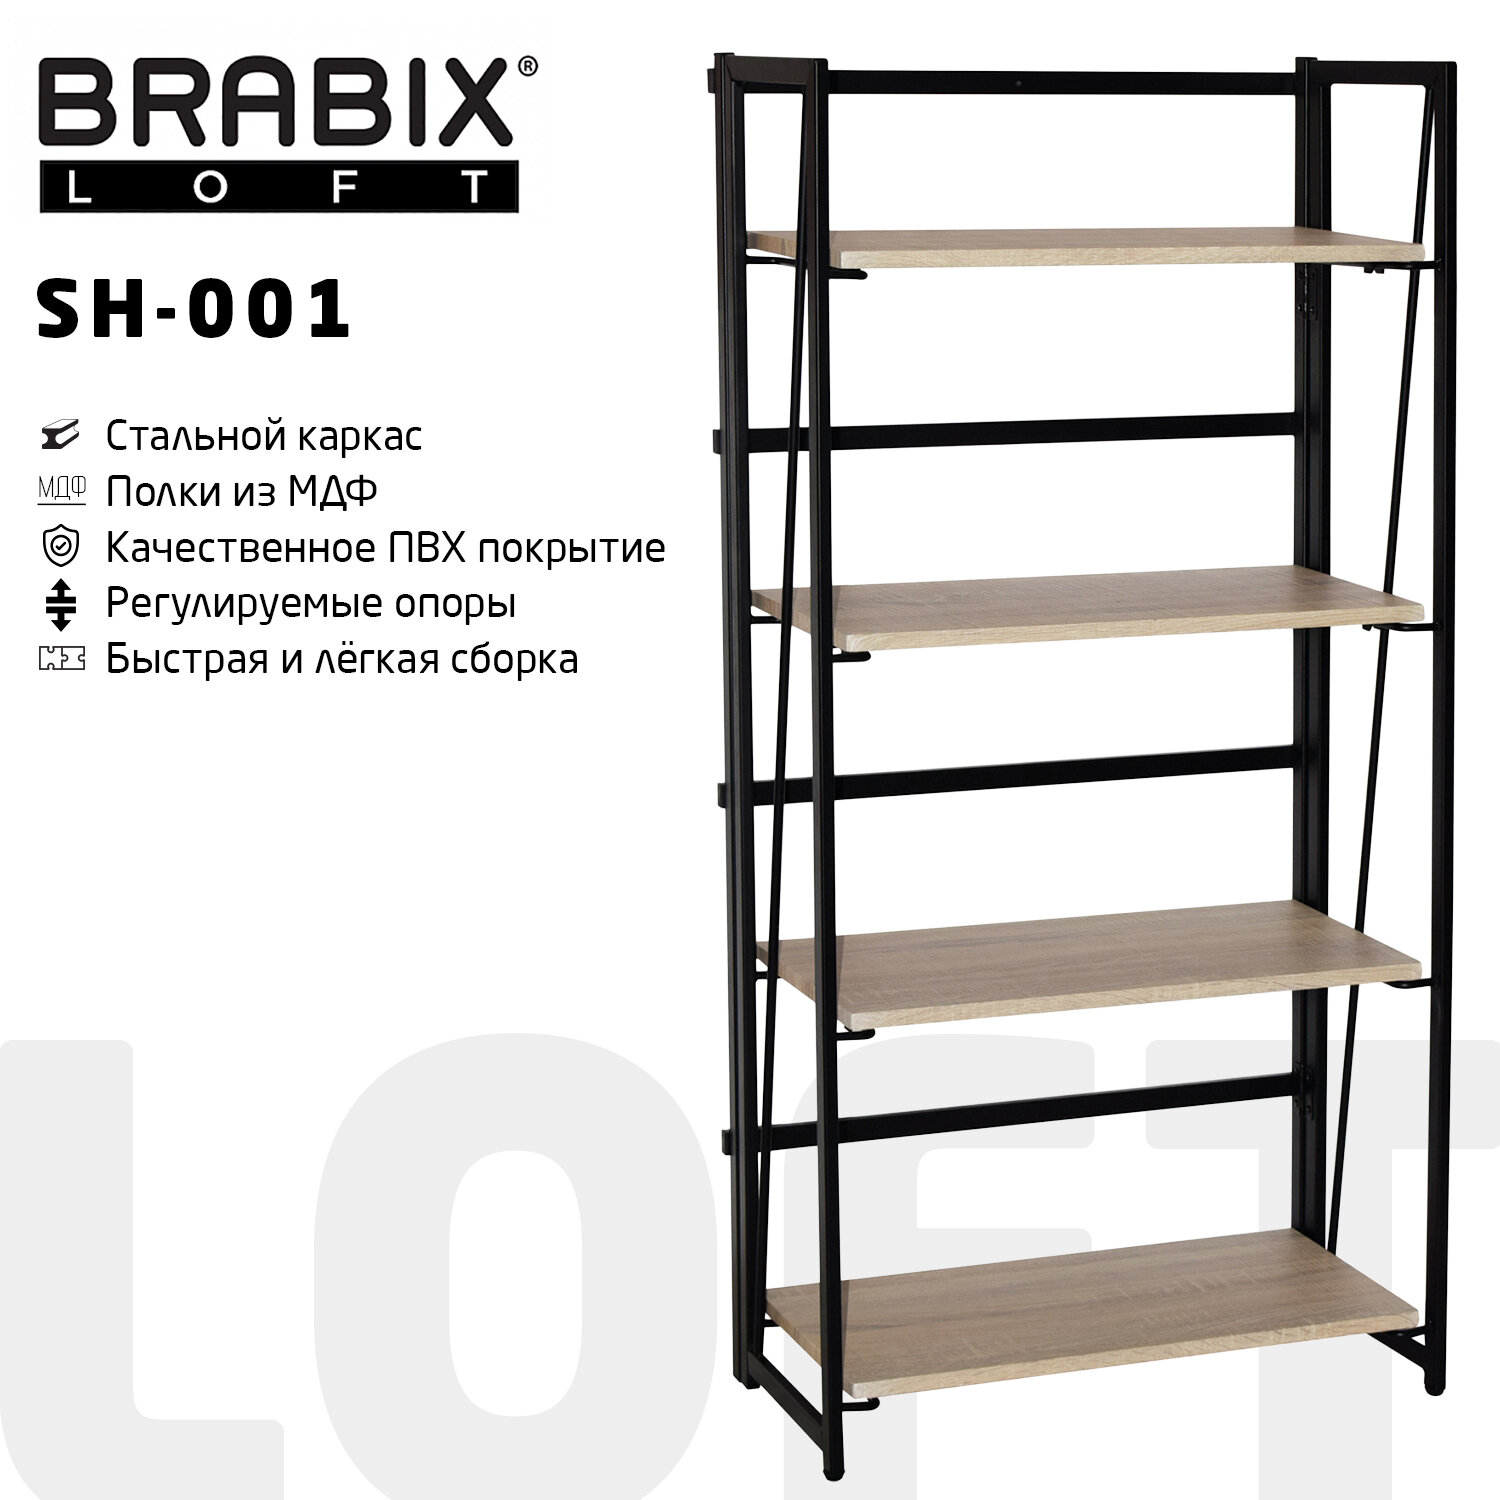    BRABIX LOFT SH-001, 6003001250 , ,   , 641230